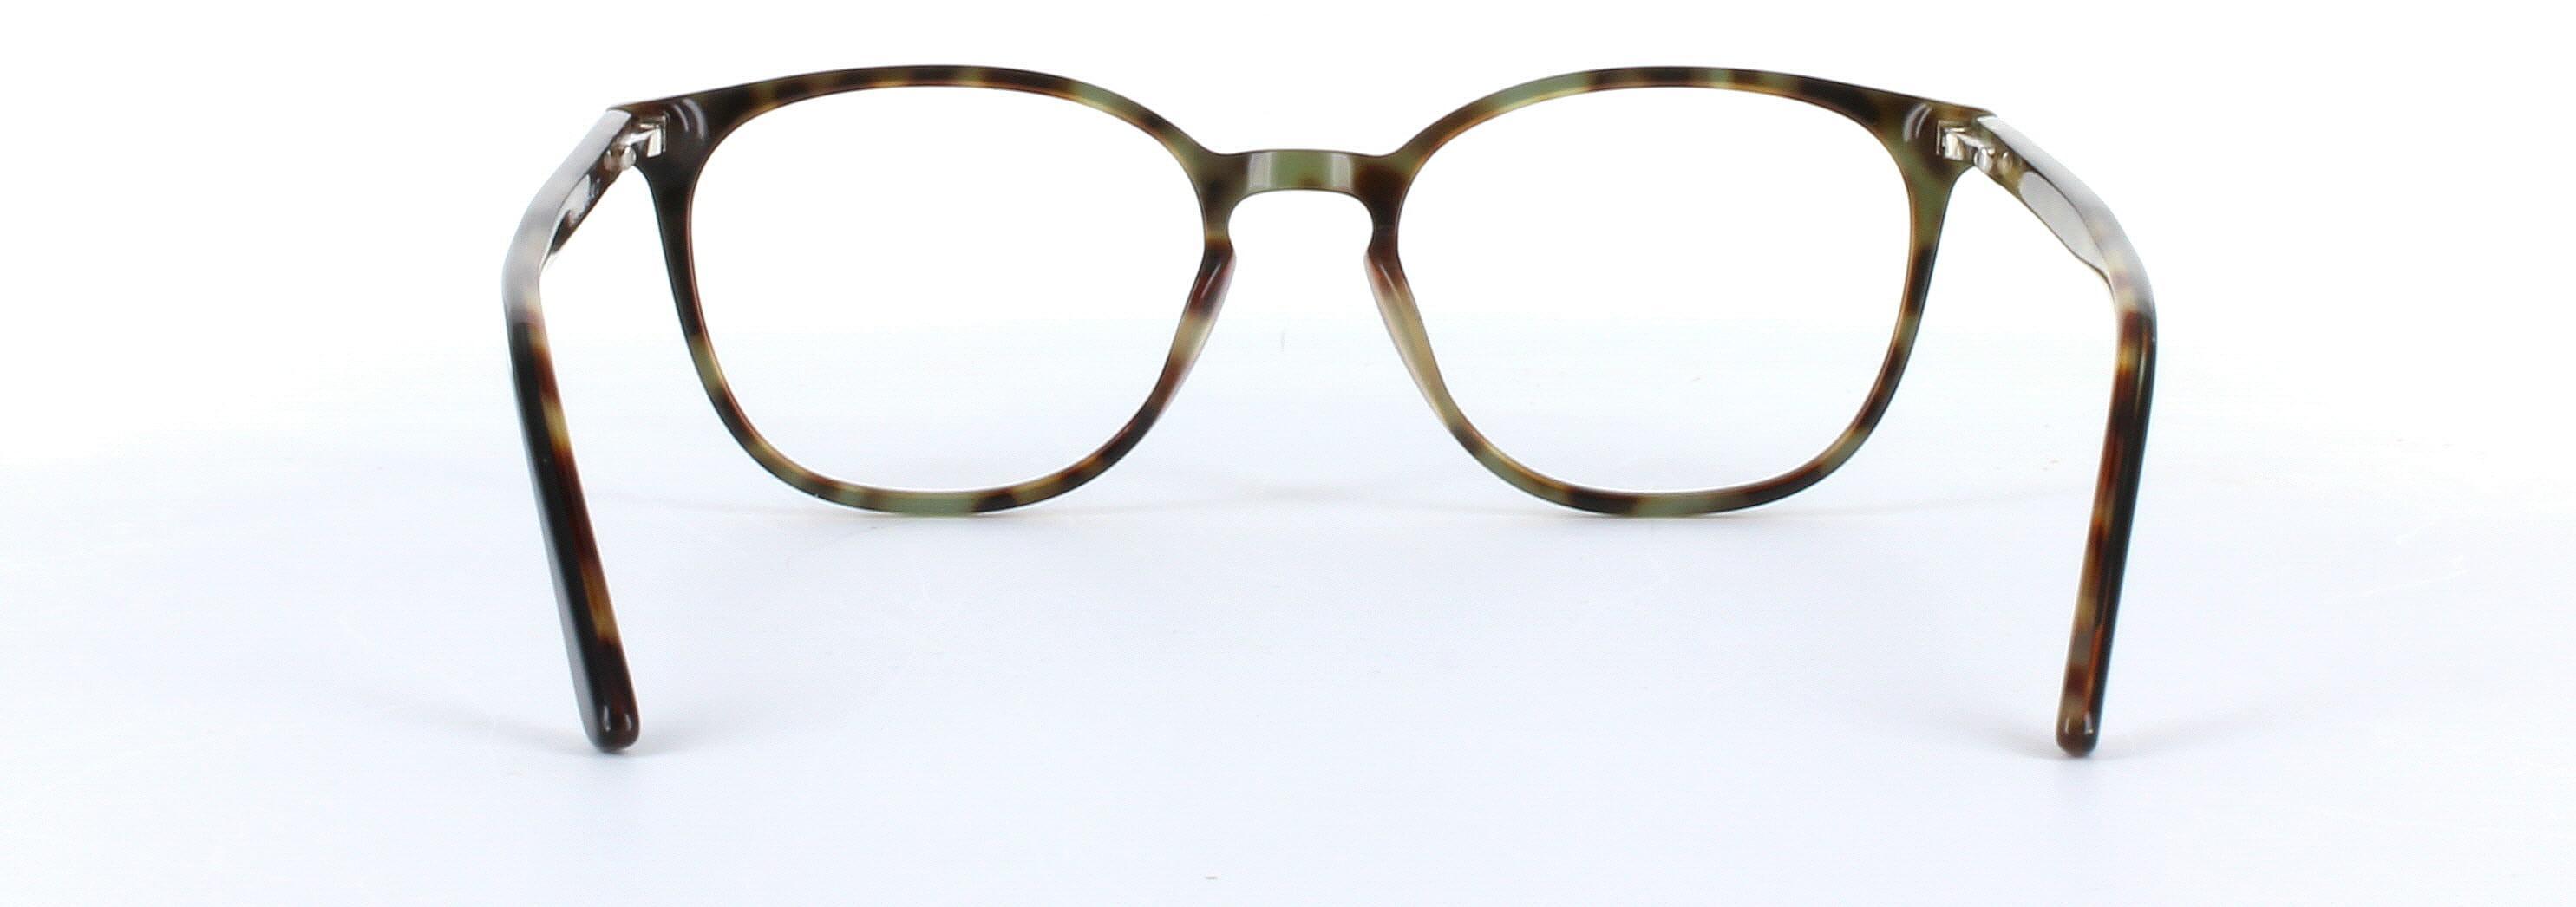 Hazar Dark Brown Full Rim Oval Acetate Glasses - Image View 3